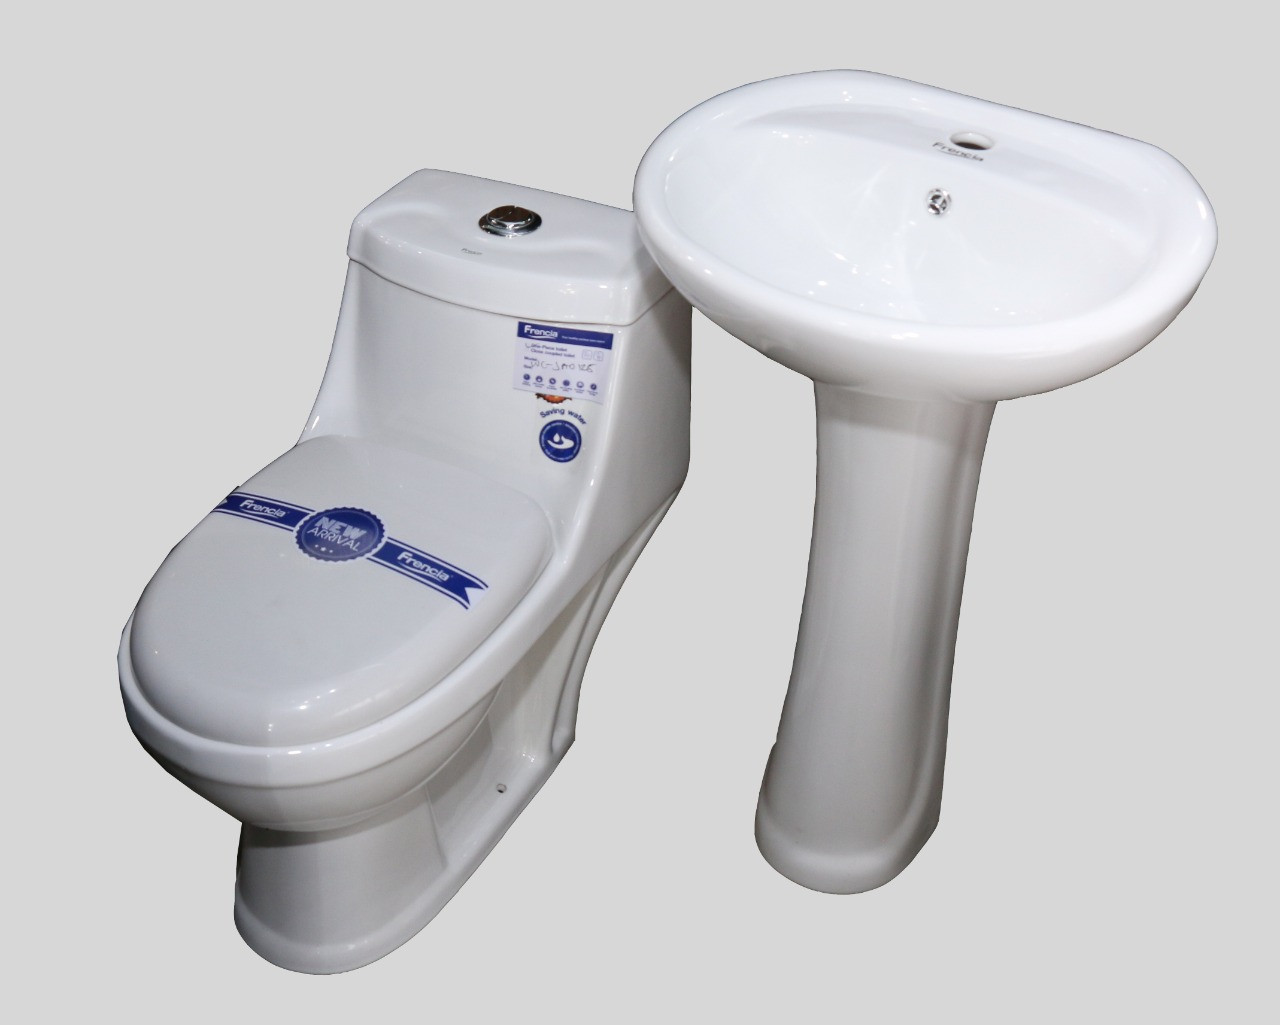 Frencia Small Body Toilet – JA0125 Full Set